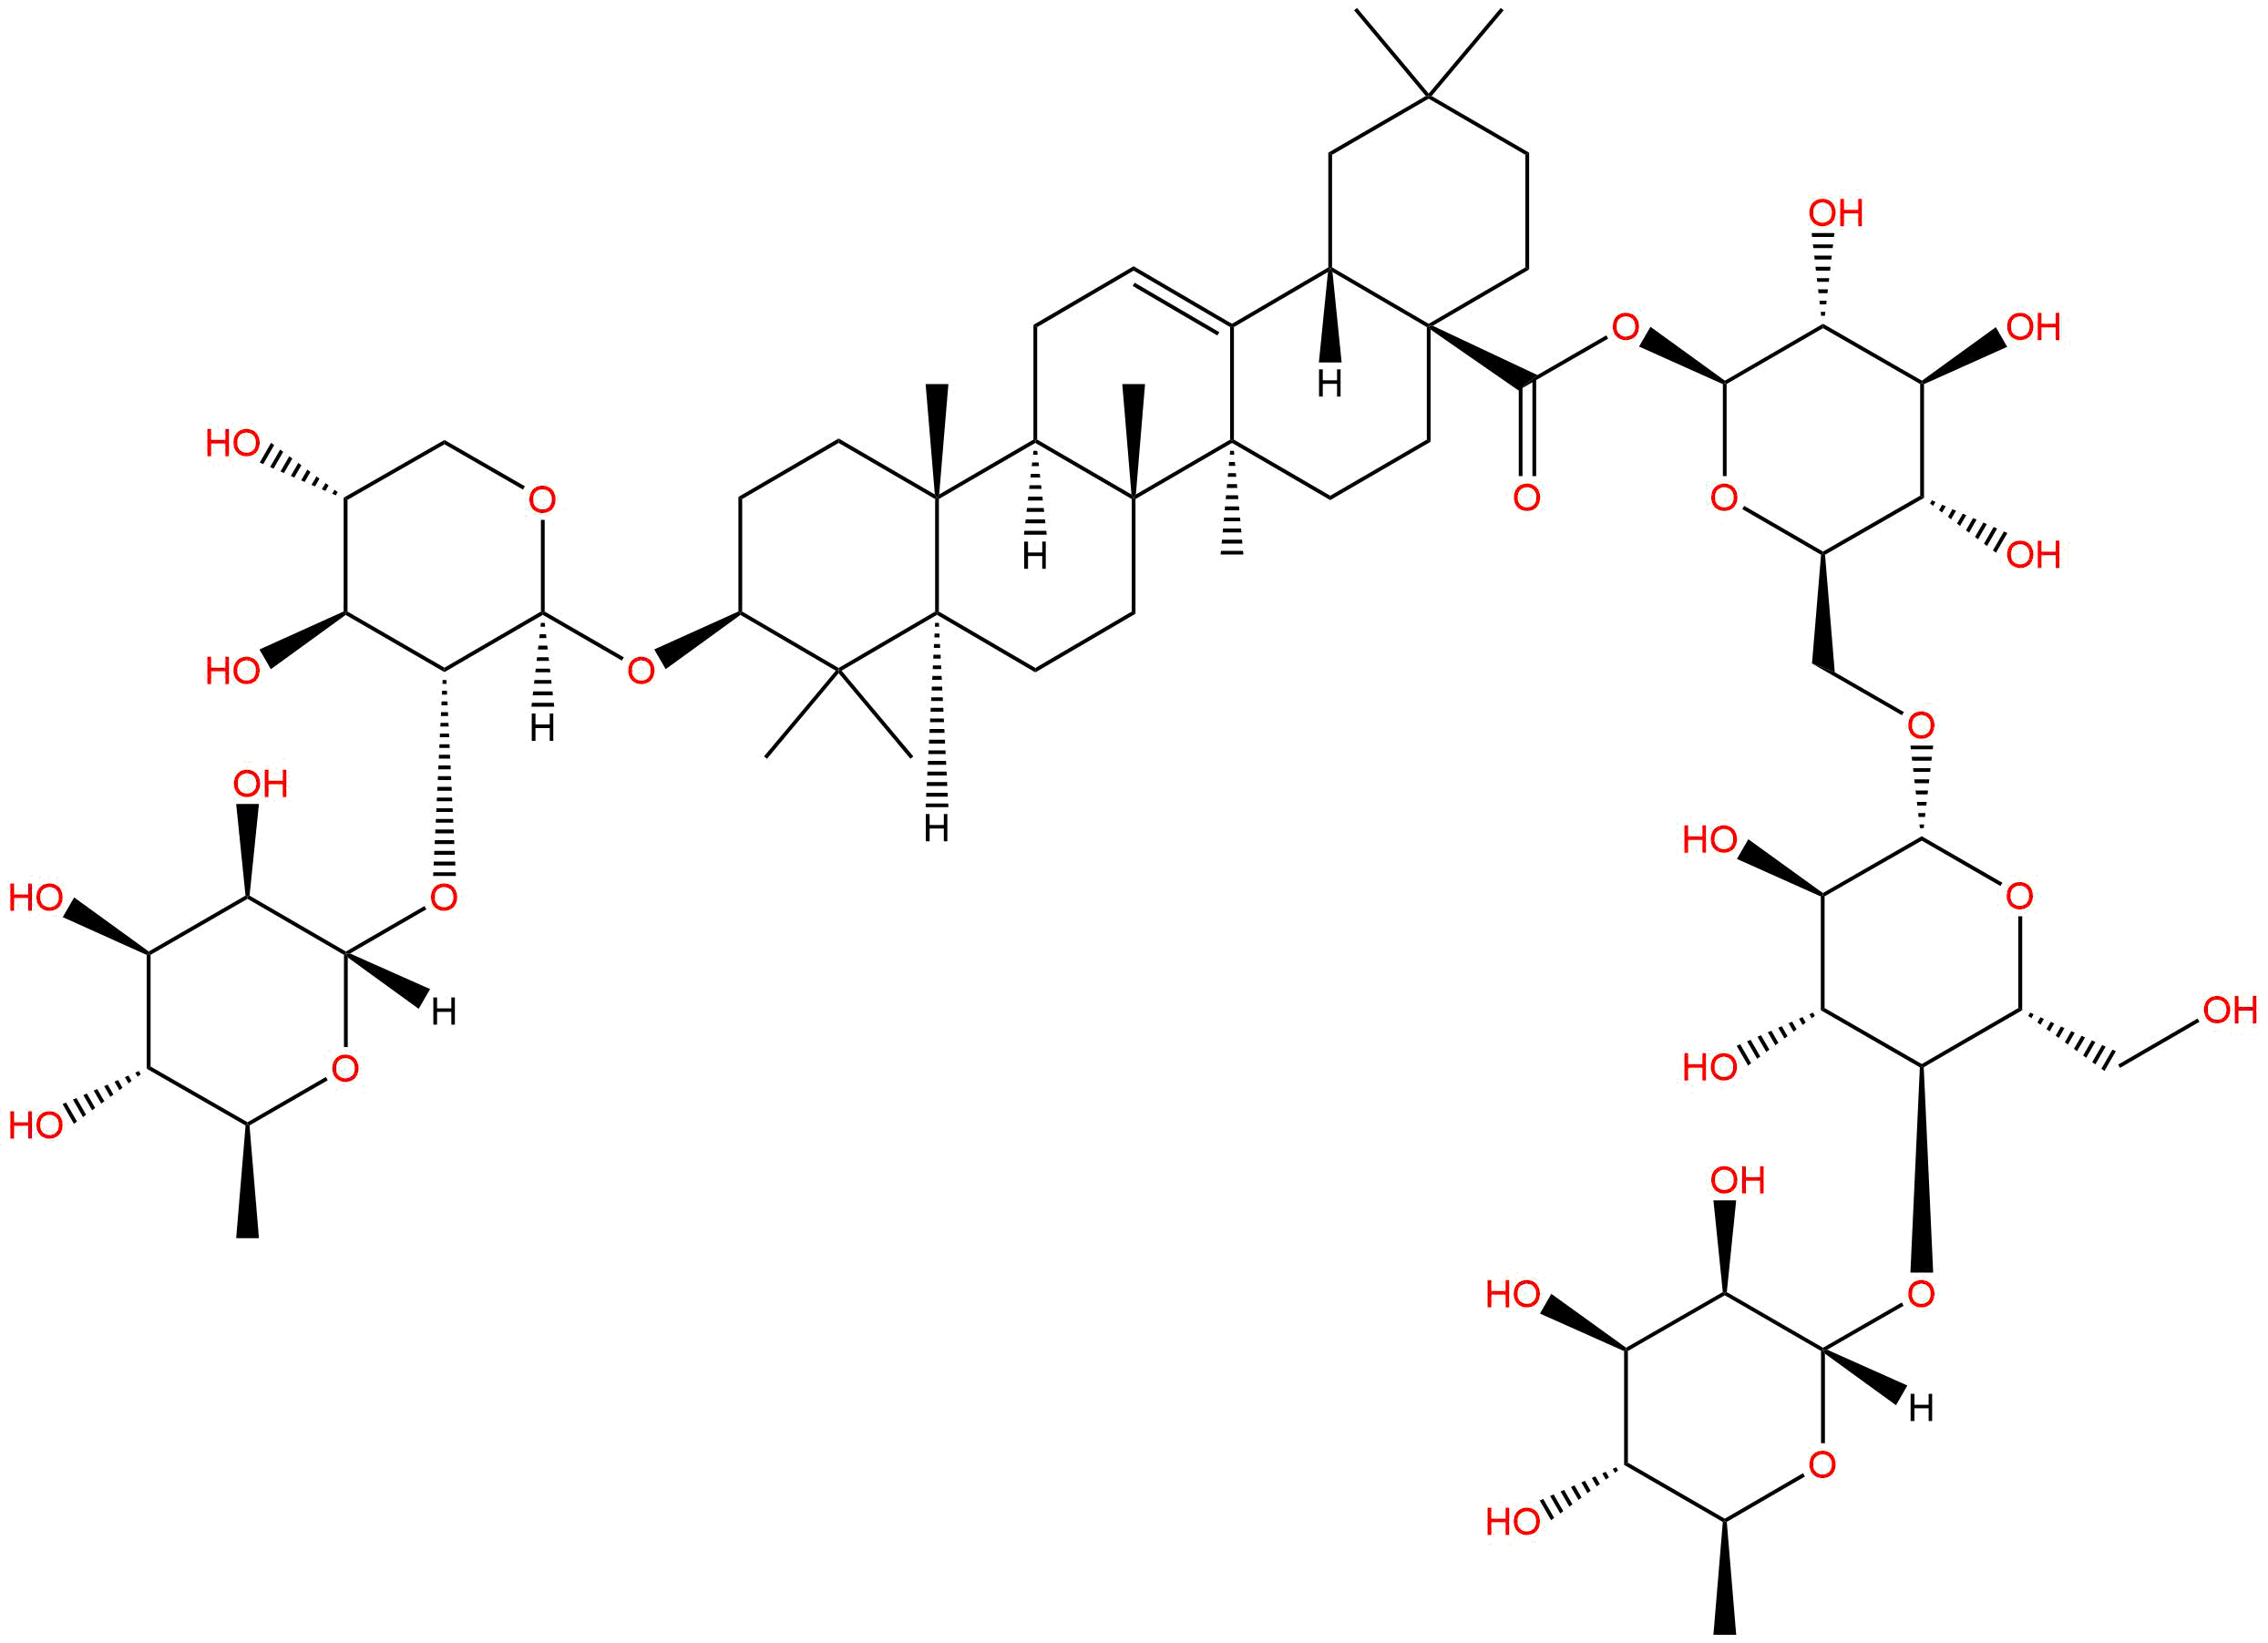 Flaccidoside II